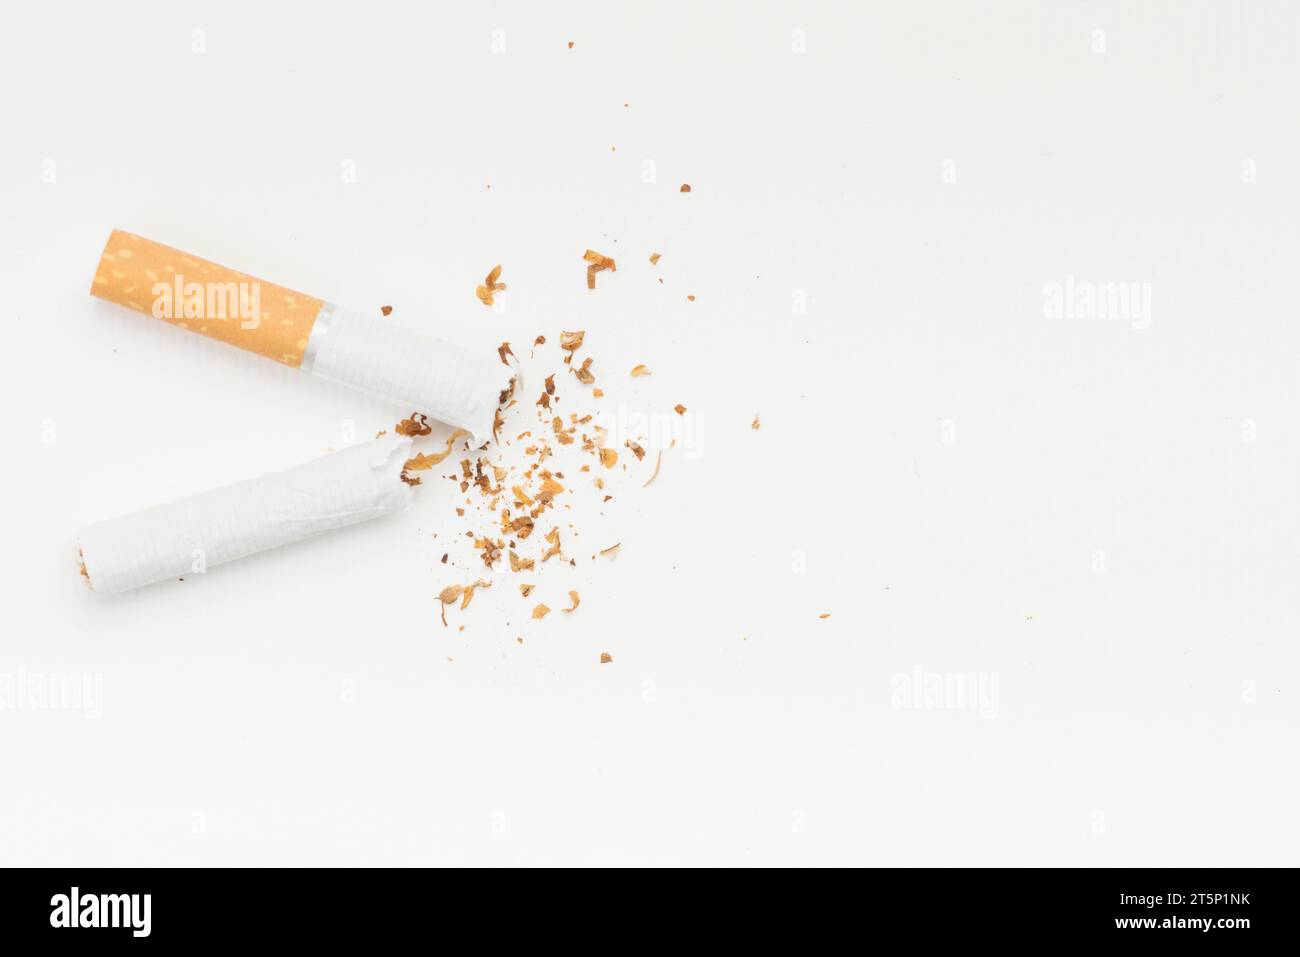 Tabac provenant de cigarettes cassées sur fond blanc Banque D'Images